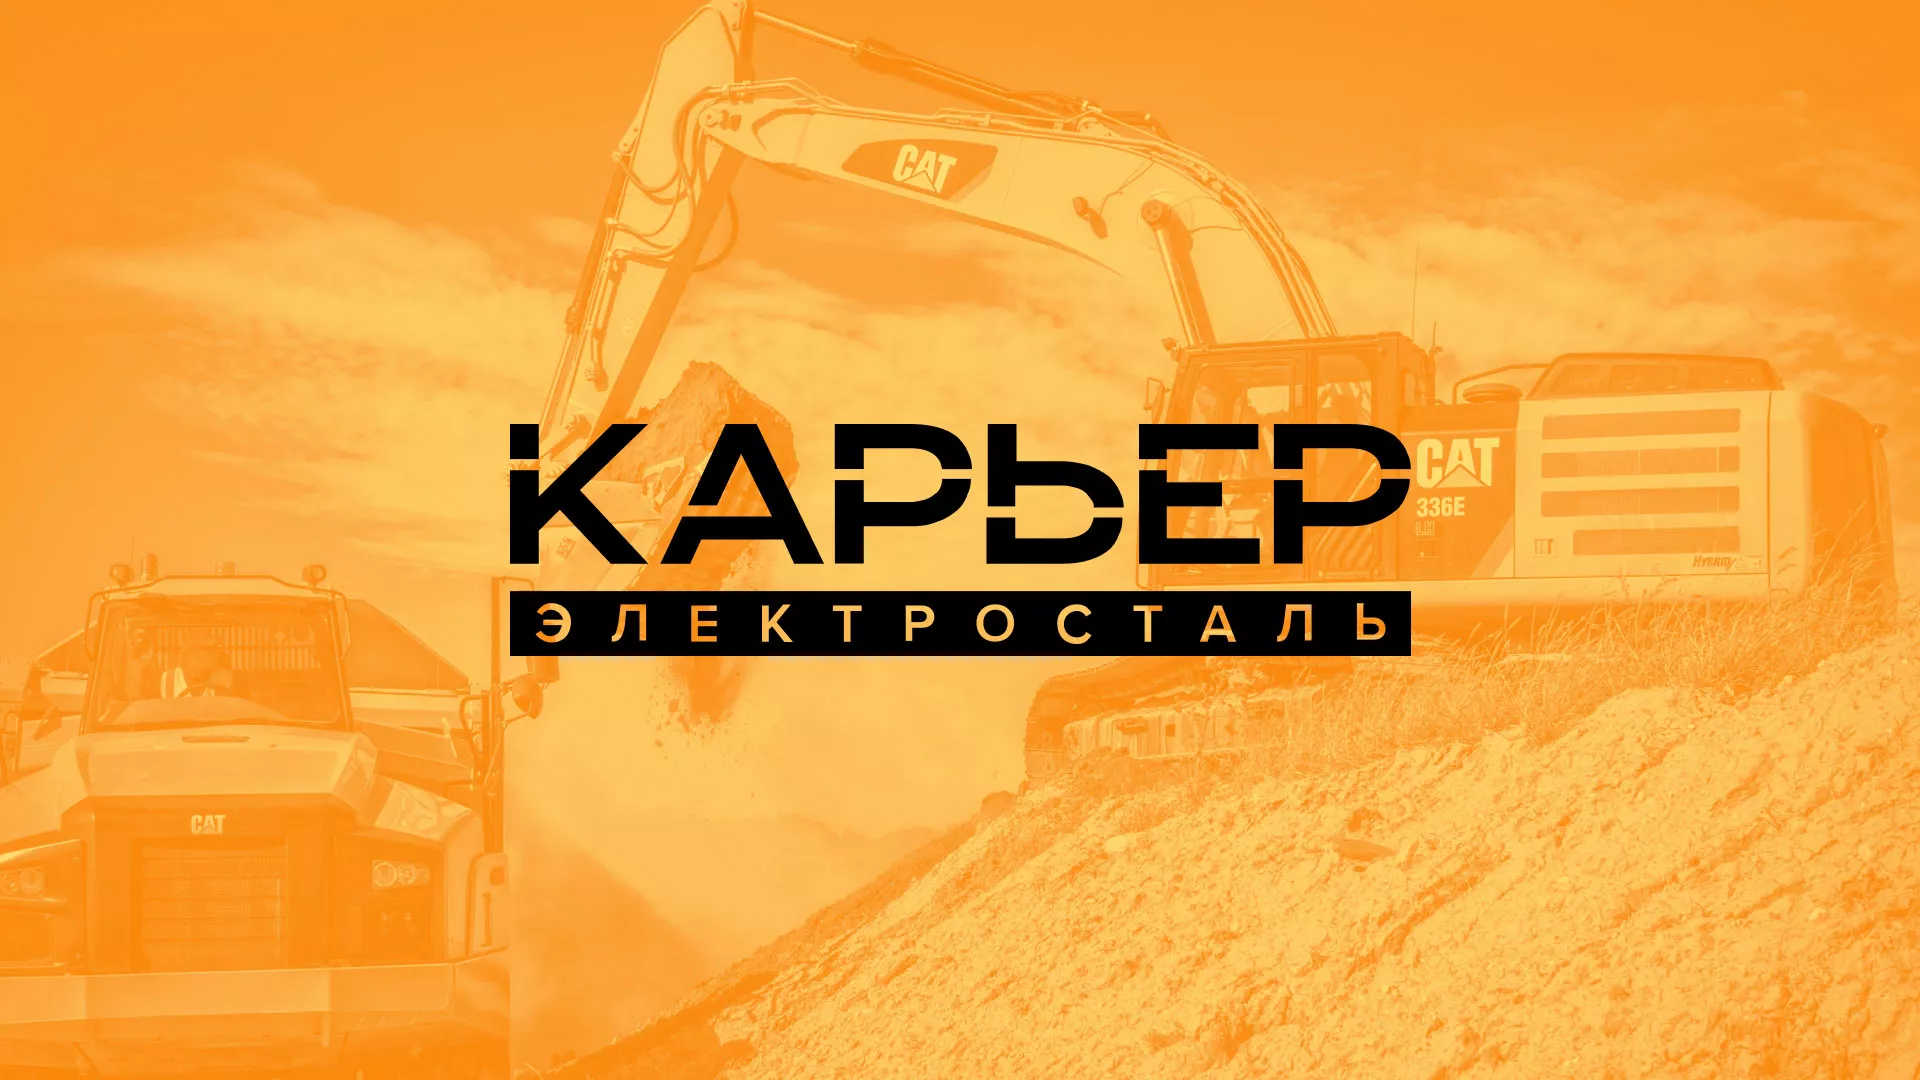 Разработка сайта по продаже нерудных материалов «Карьер» в Александровске